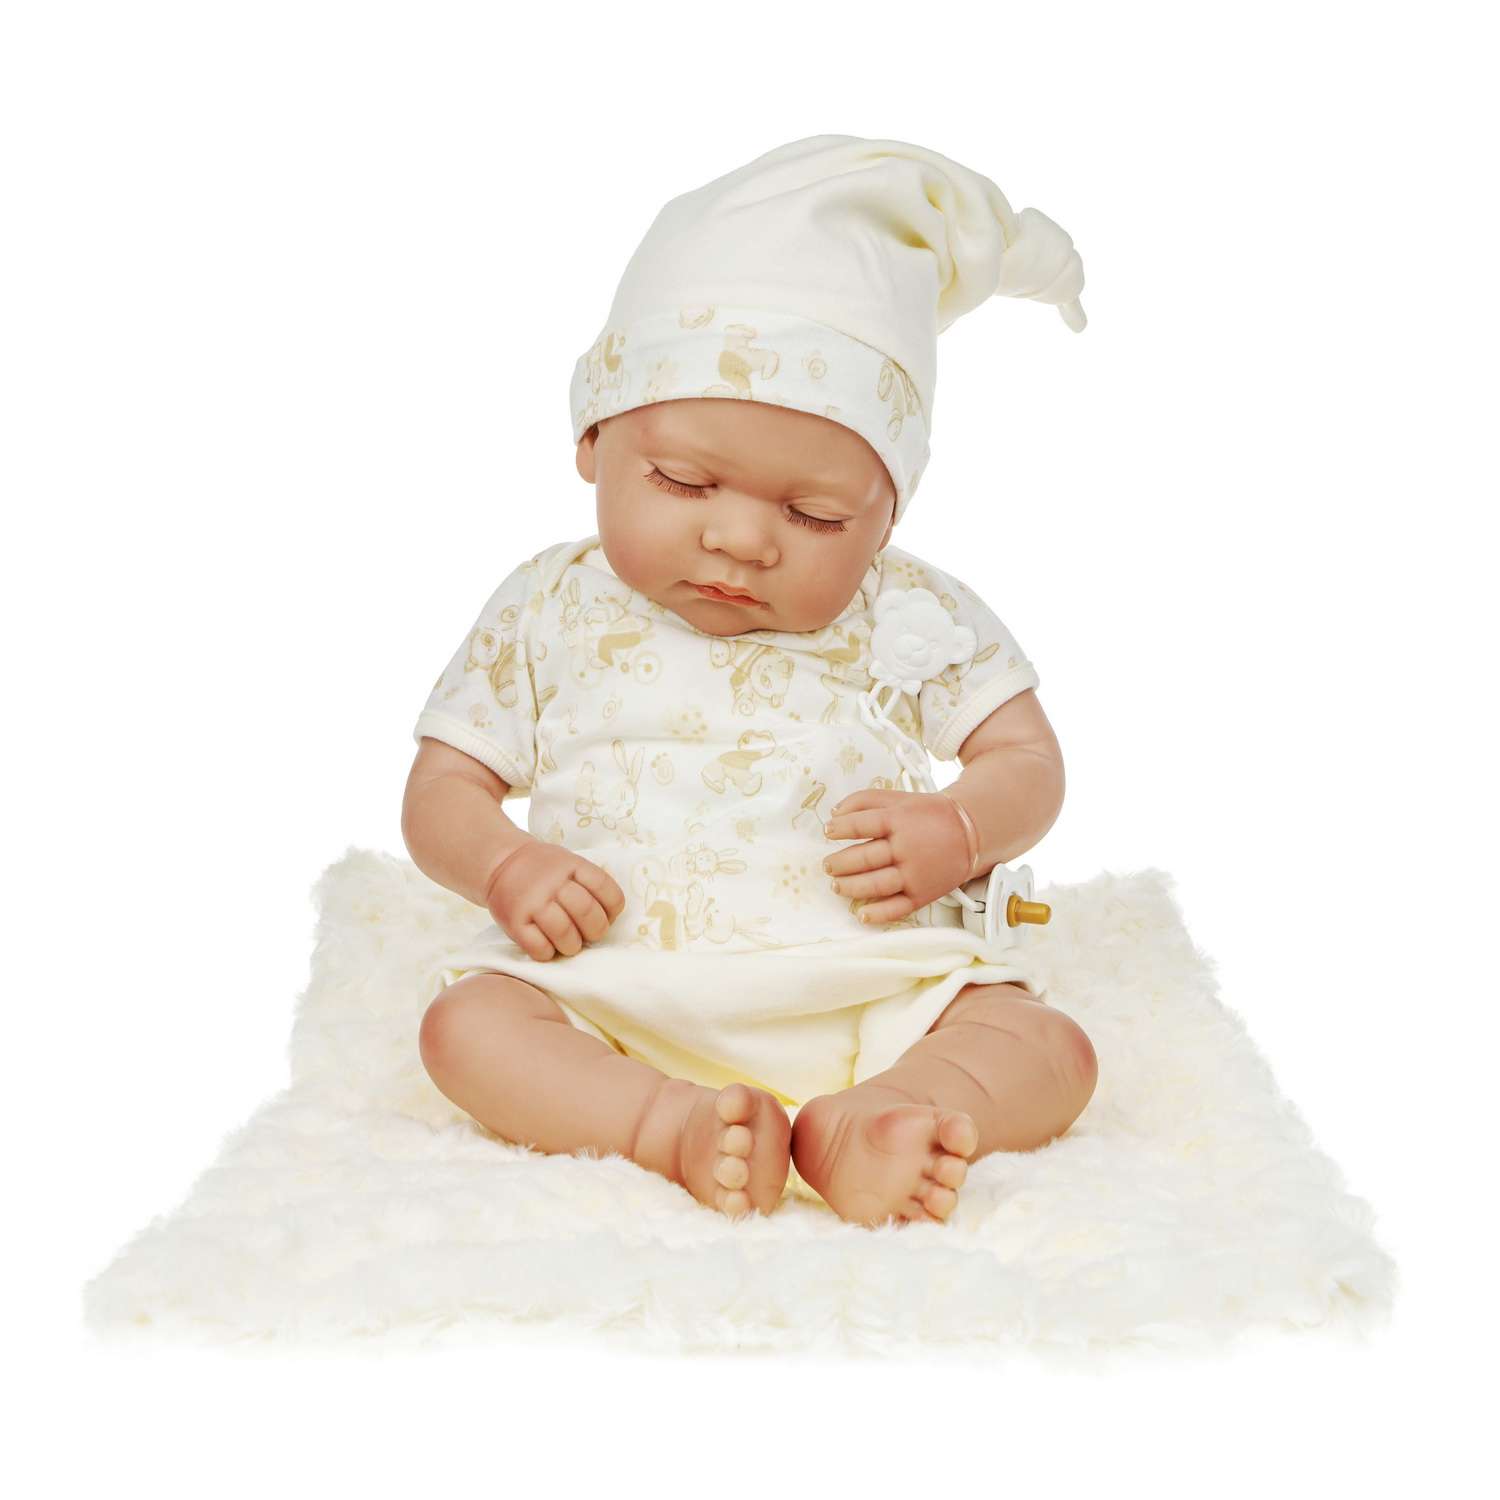 Кукла Arias ReBorns Pablo новорождённый пупс 45 см в одежде с соской одеялом подгузниками Т22108 - фото 3